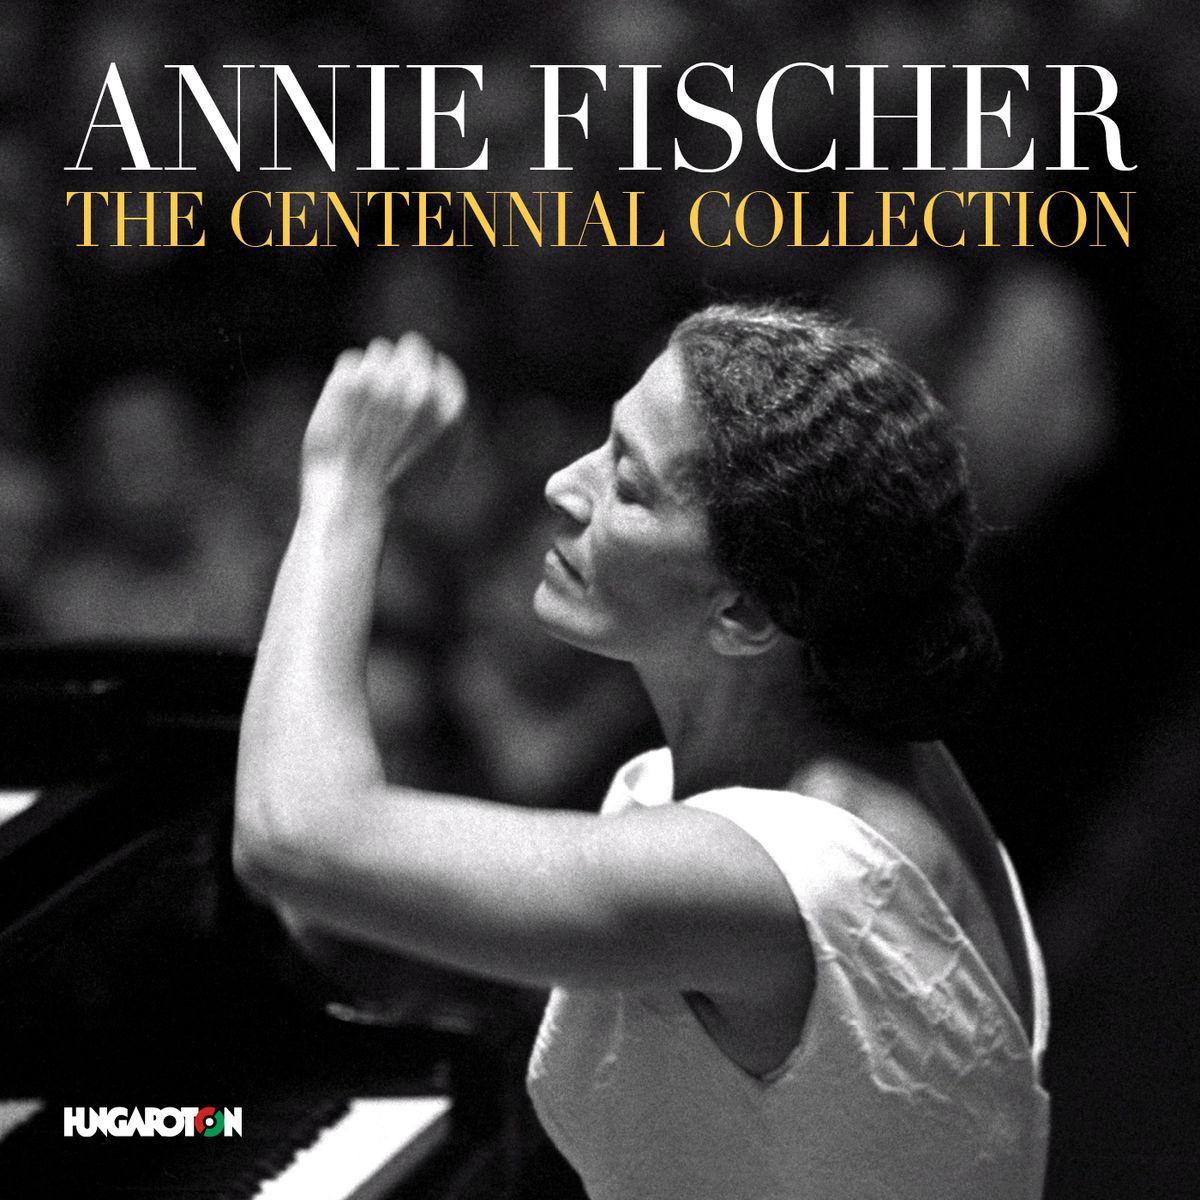 Annie Fischer: The Centennial Collection